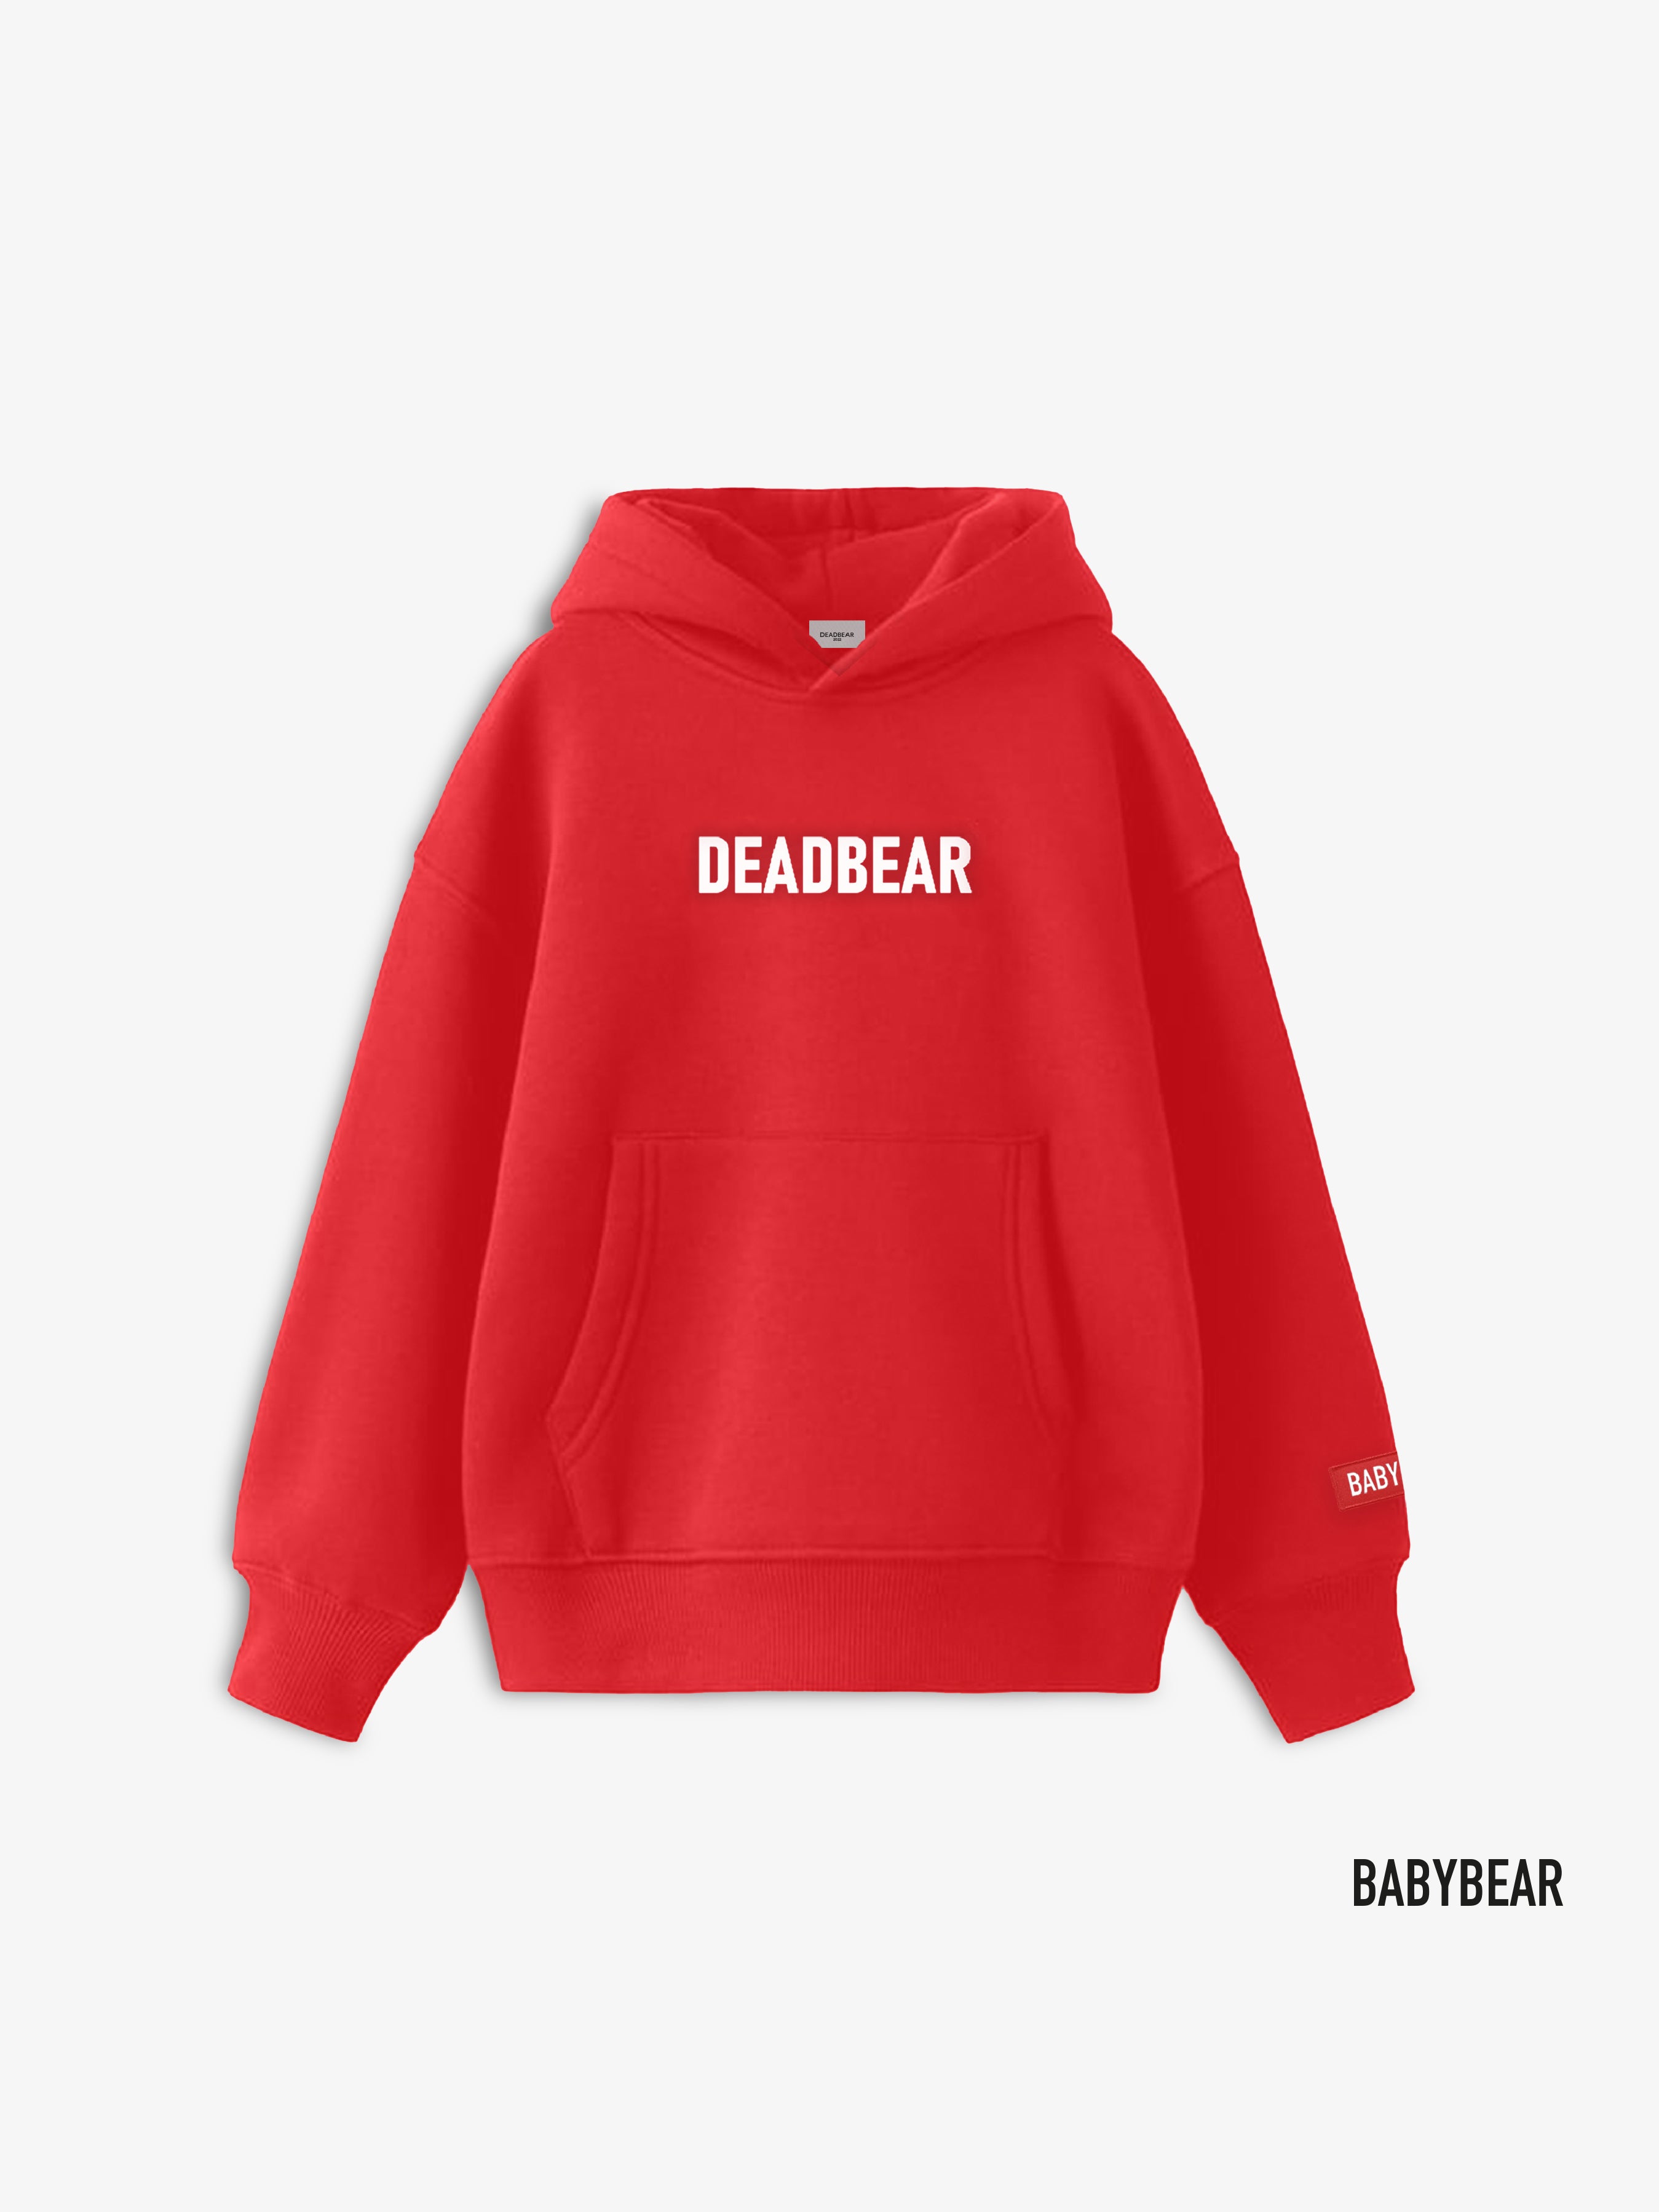 Buy Babybear Steetwear Online